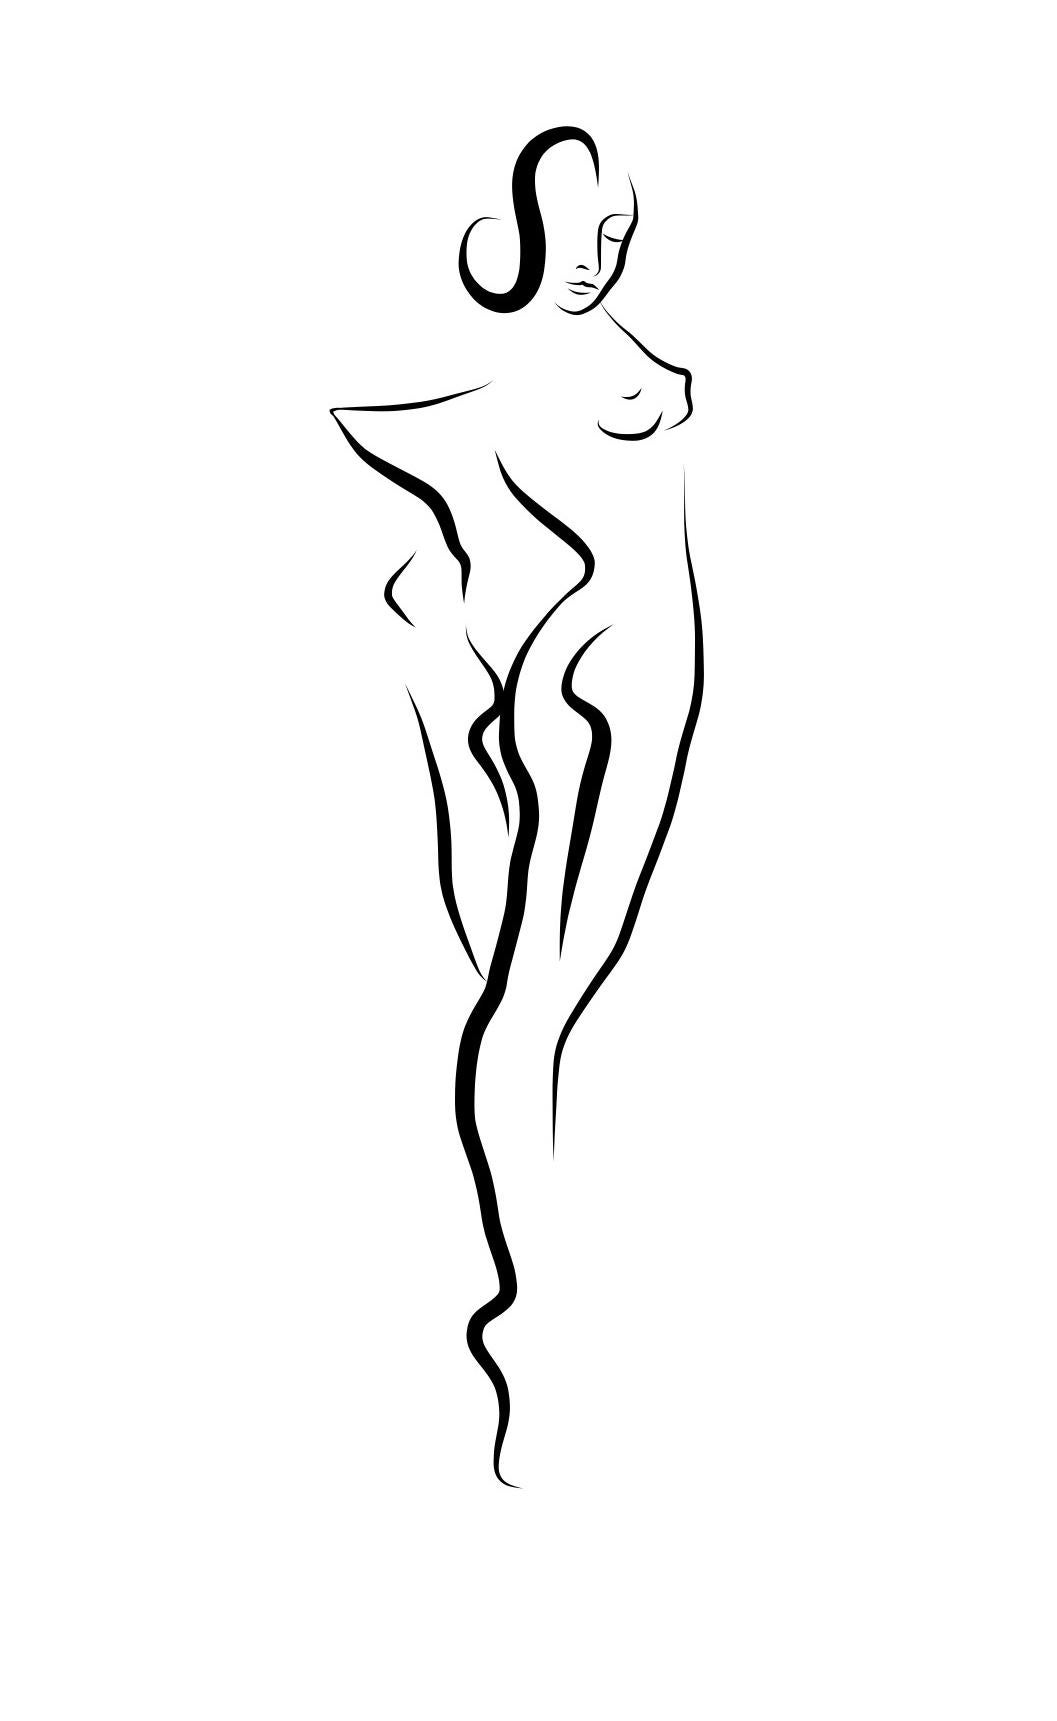 Michael Binkley Nude Print – Haiku #2, 1/50 - Digitale Vector-Zeichnung, stehende weibliche nackte weibliche Aktfigur, Figur